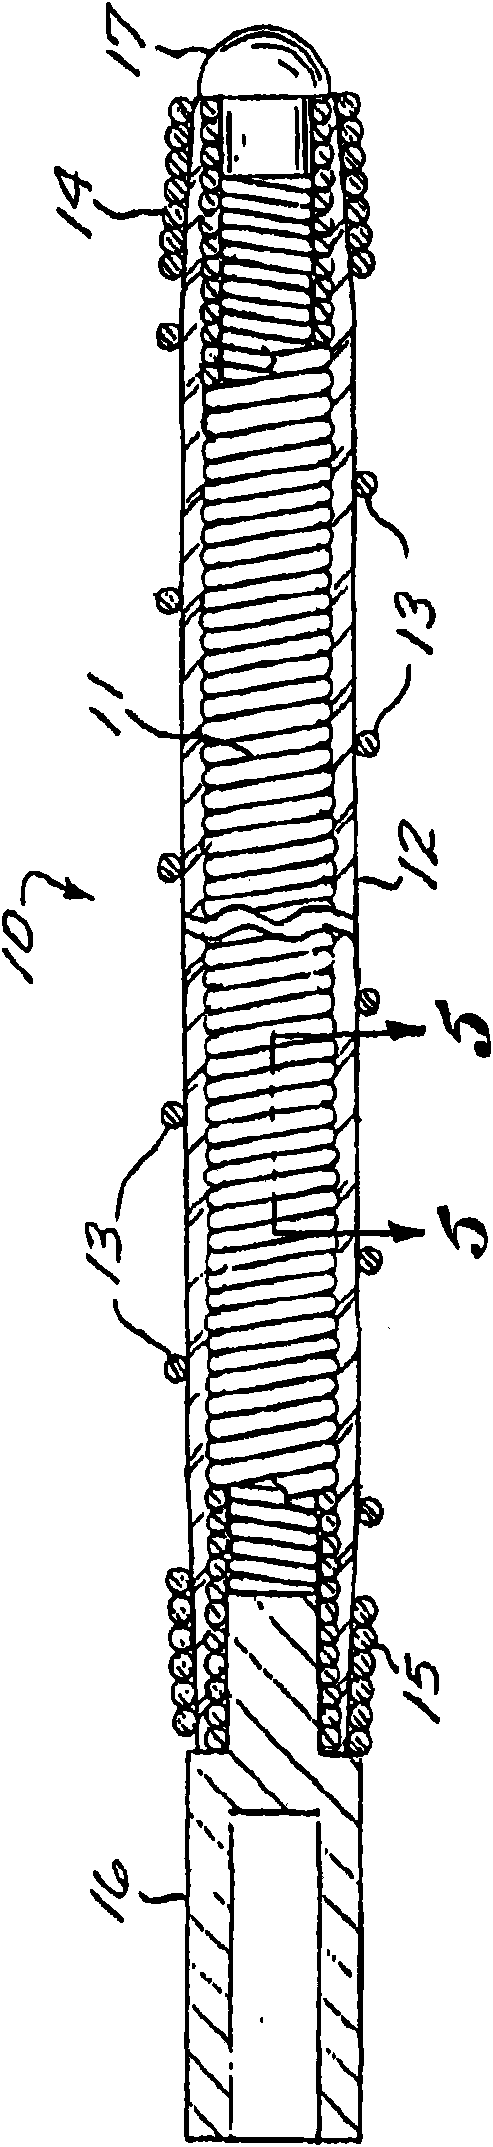 Multi-layer coaxial vaso-occlusive device